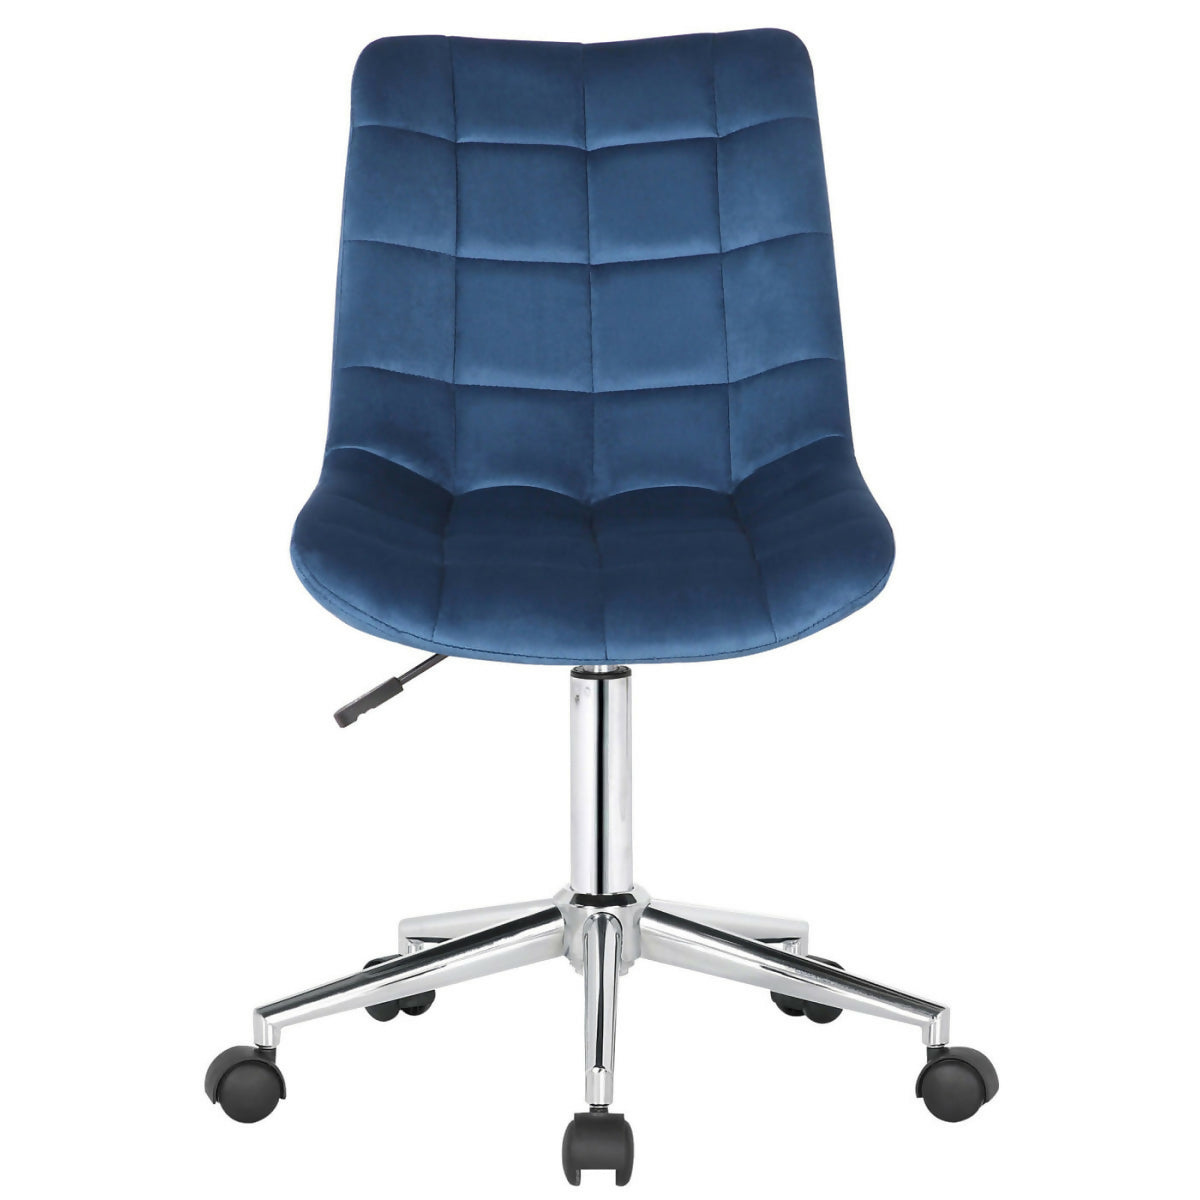 Medford office chair - Blue velvet - 0